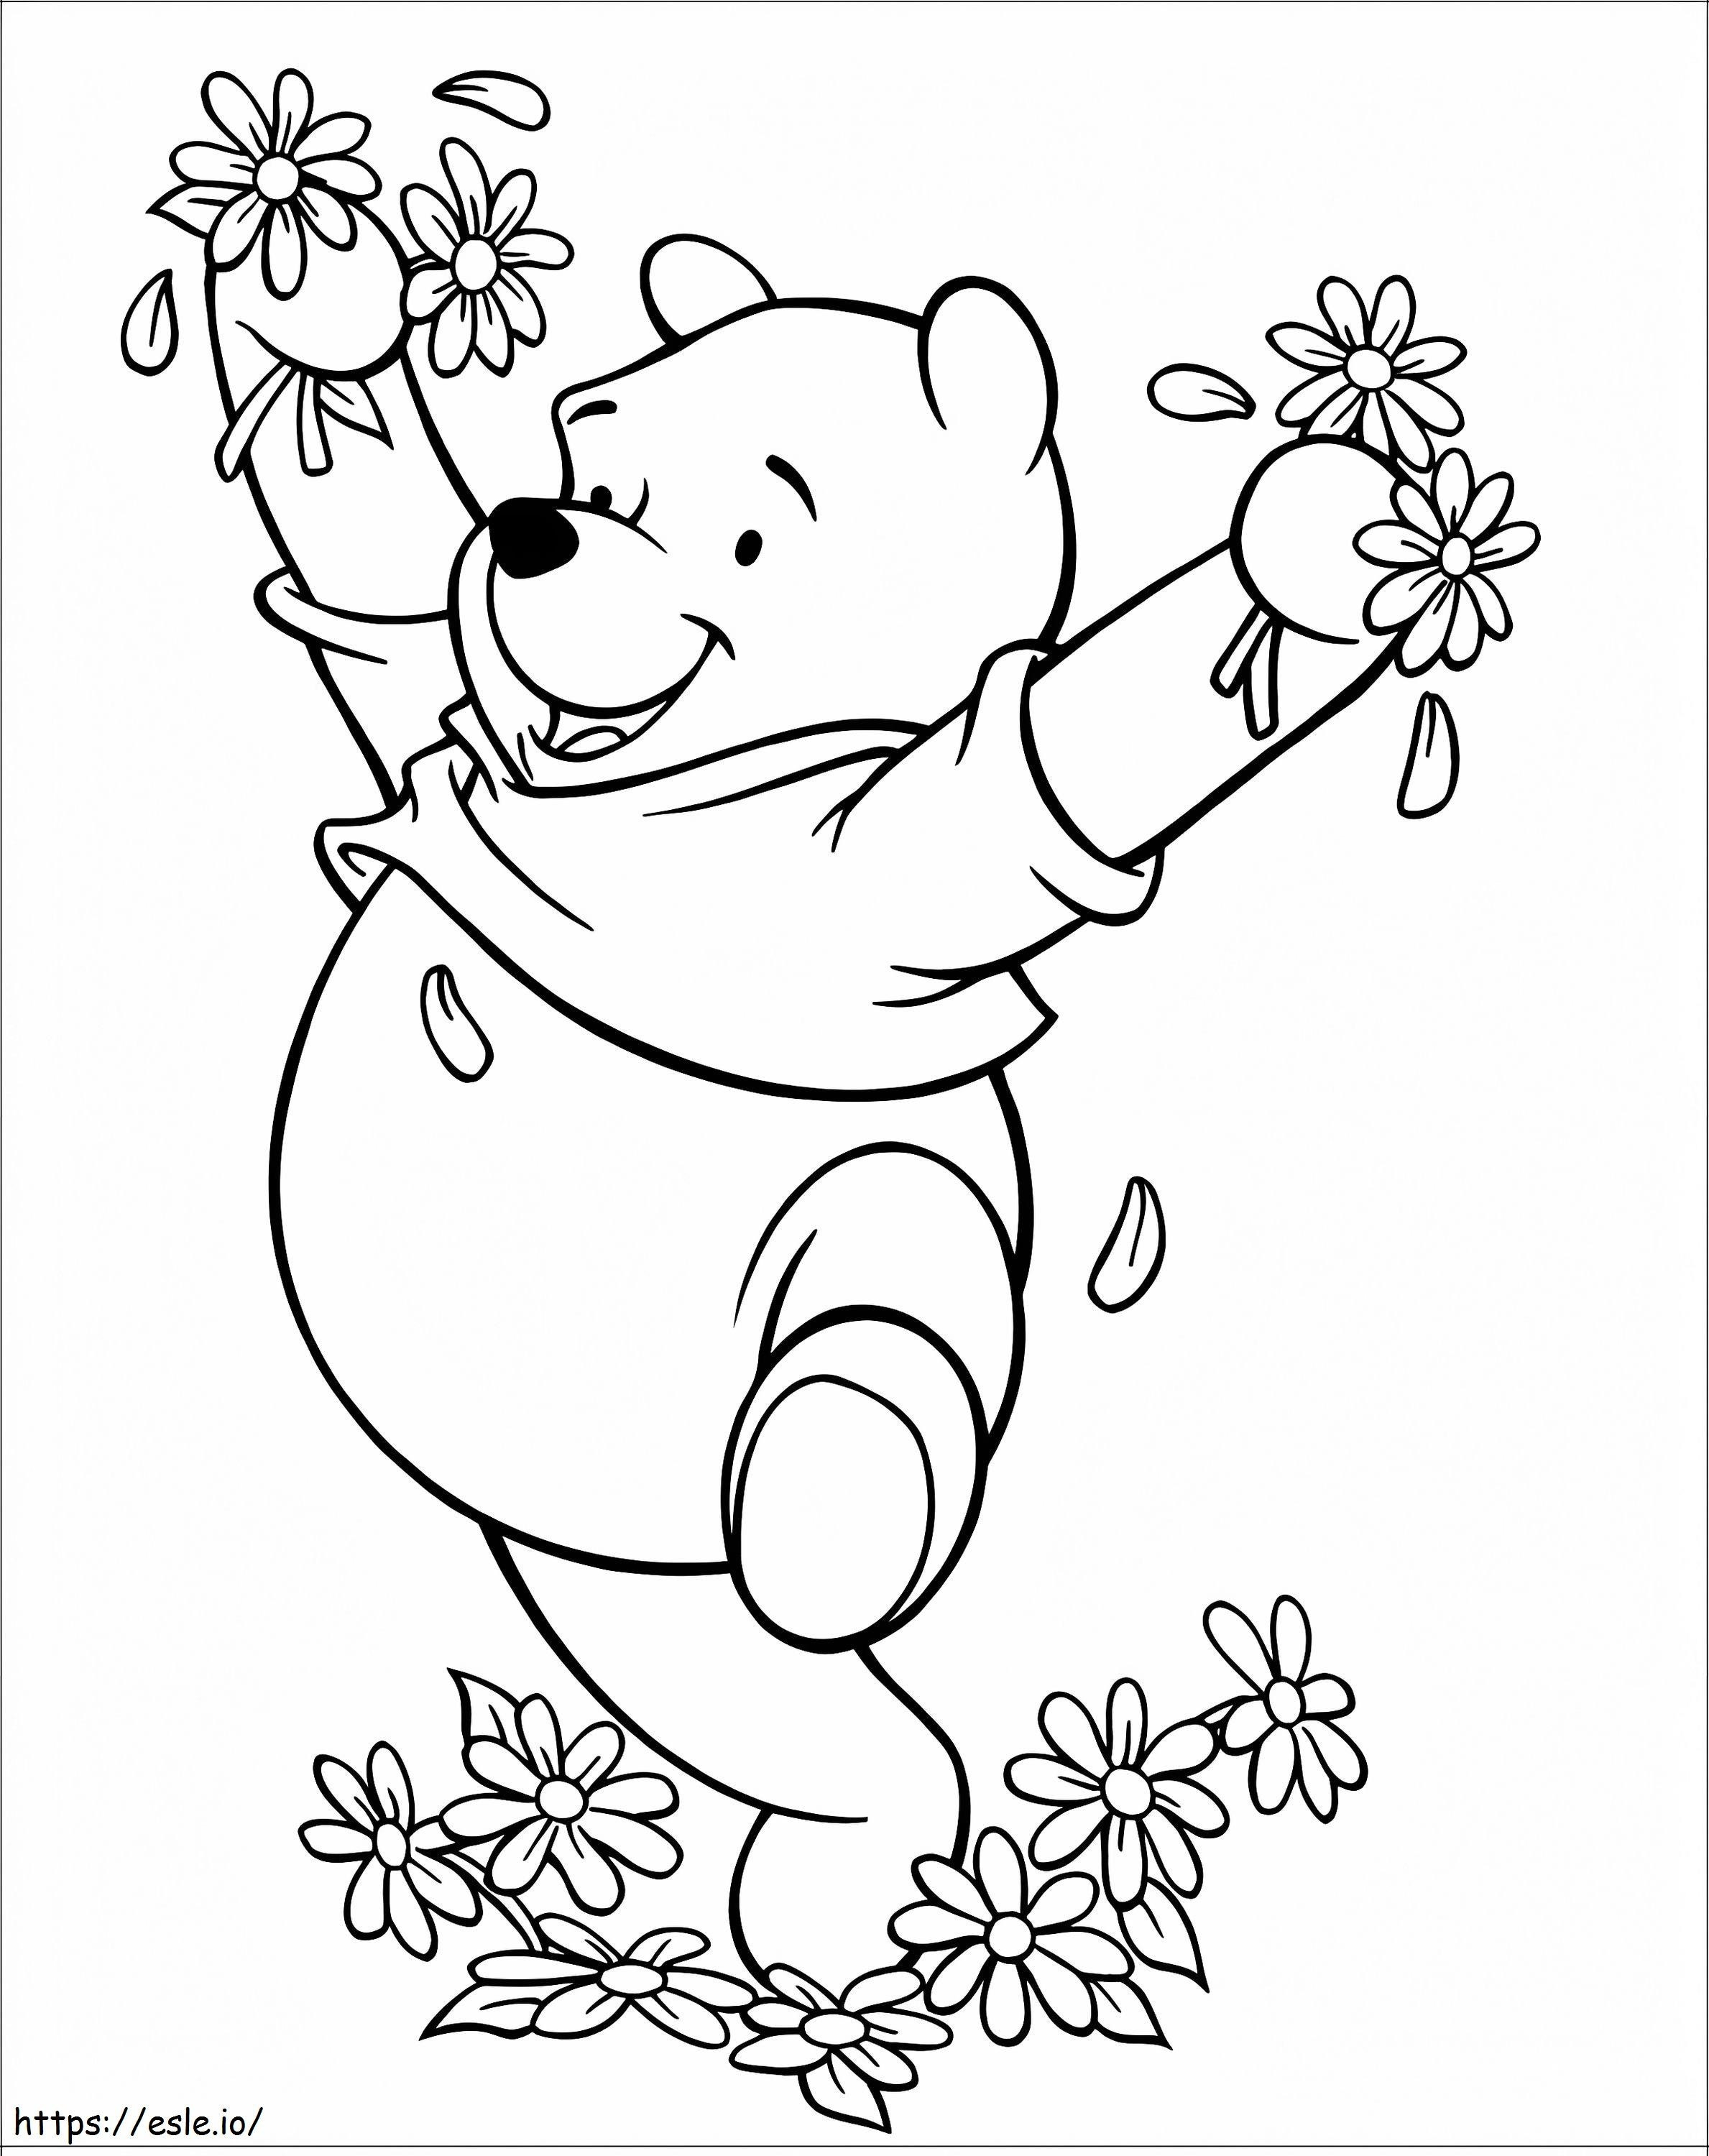 Feliz Ursinho Pooh com flores para colorir